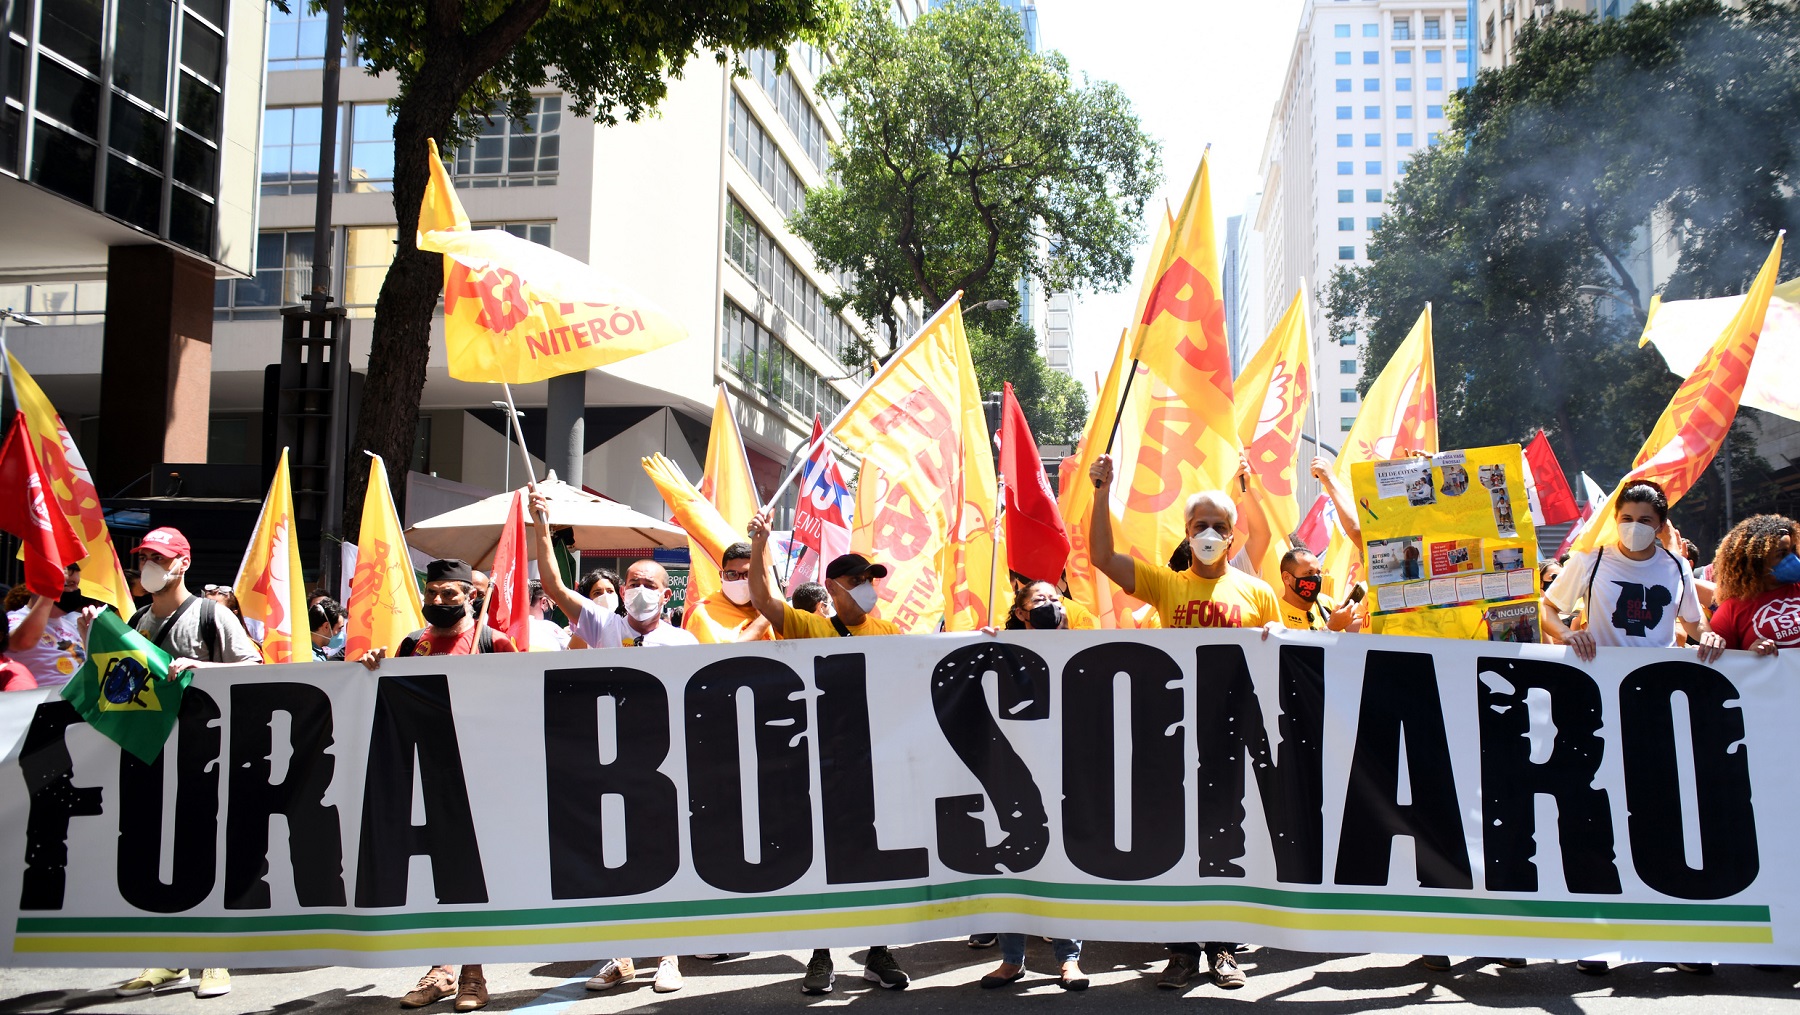 „Bolsonaro raus“ ist auf diesem Transparenz einer Anti-Bolsonaro-Demonstration in Rio de Janeiro am 2. Oktober 2021 zu lesen. Genau ein Jahr später am 2. Oktober 2022 stehen nun Präsidentschaftswahlen in Brasilien an. (c) Tobias Käufer/Adveniat